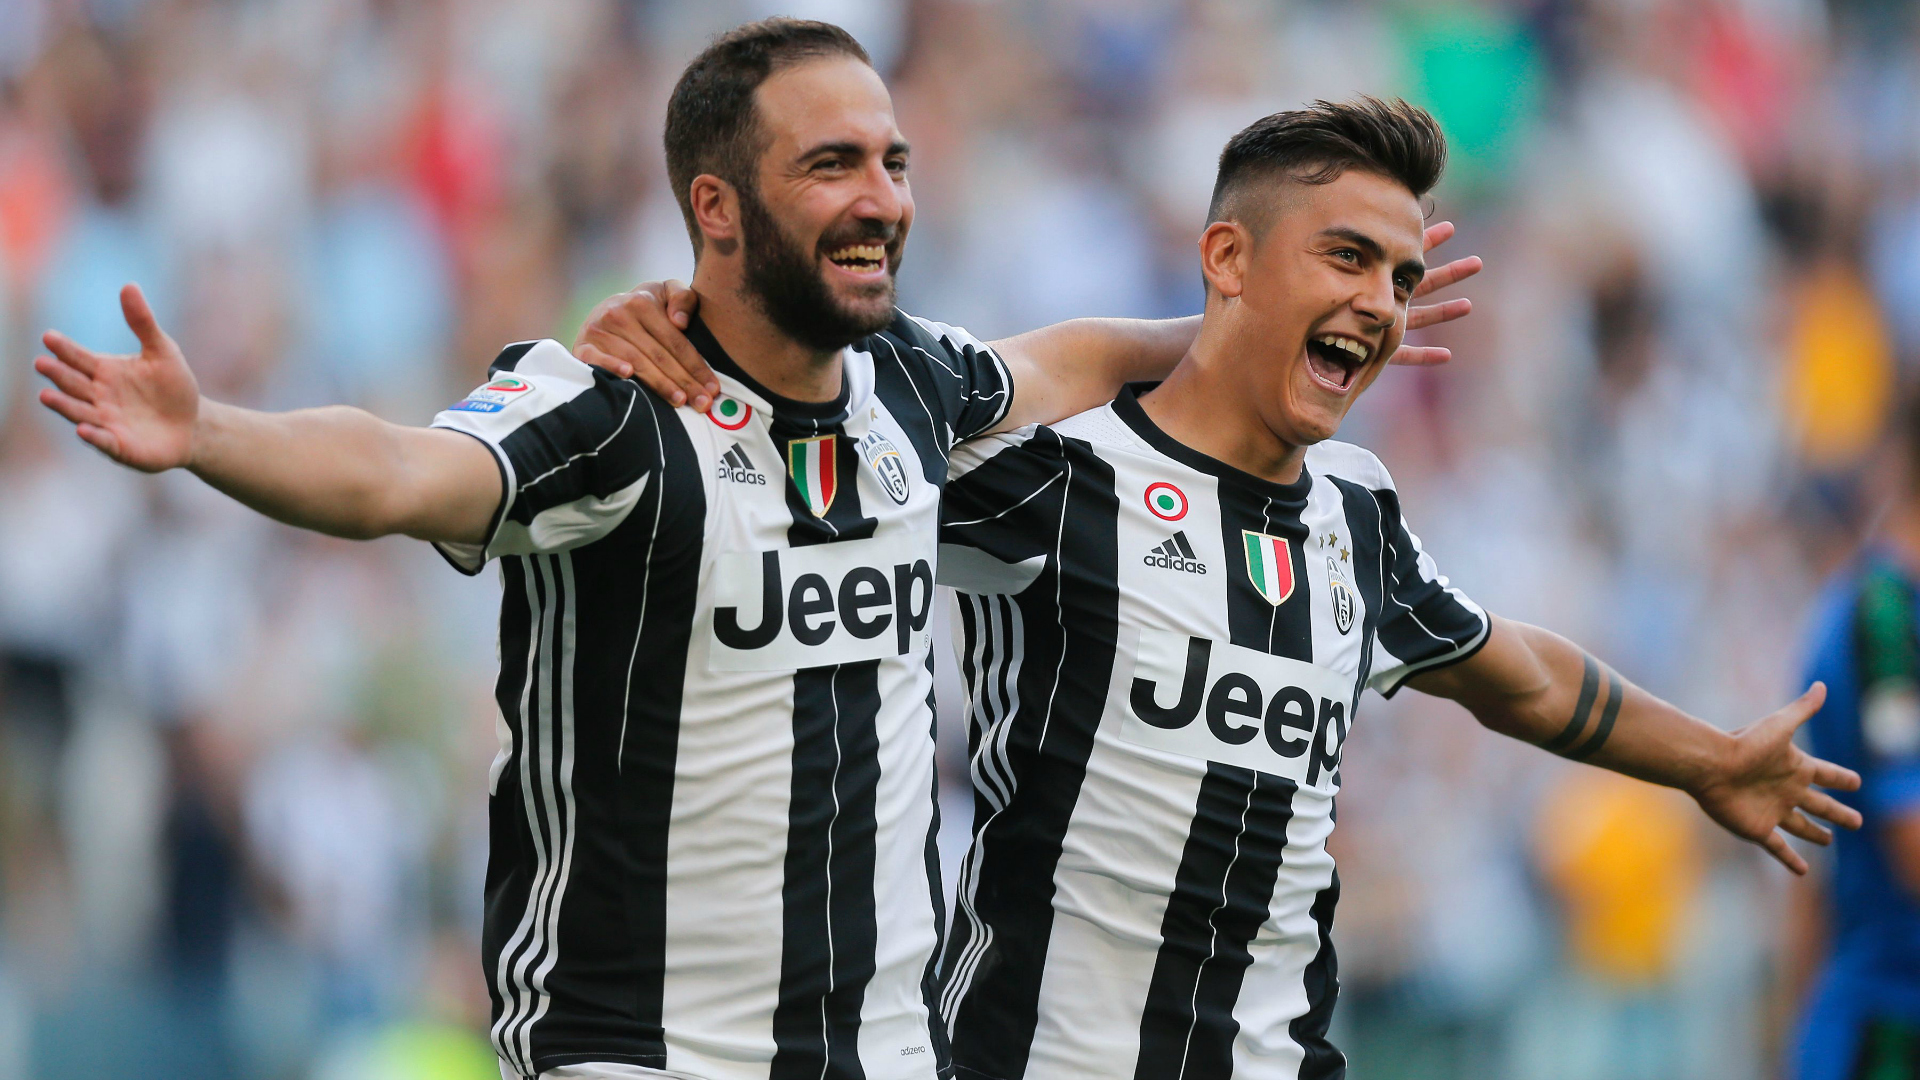 Juventus, 92% win with Higuain-Dibala